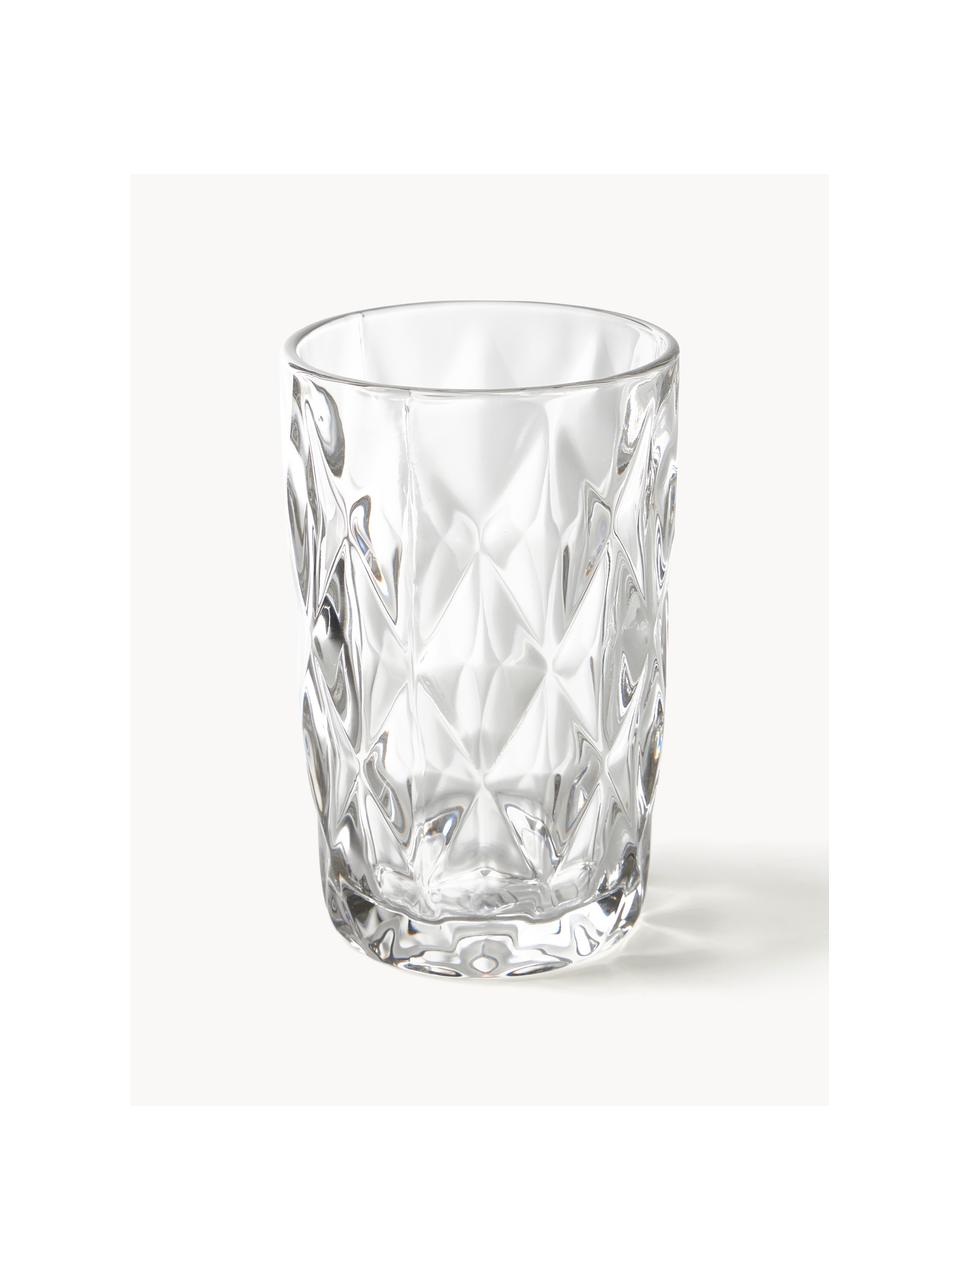 Longdrinkglazen Colorado met structuurpatroon, 4 stuks, Glas, Transparant, Ø 8 x H 13 cm, 310 ml